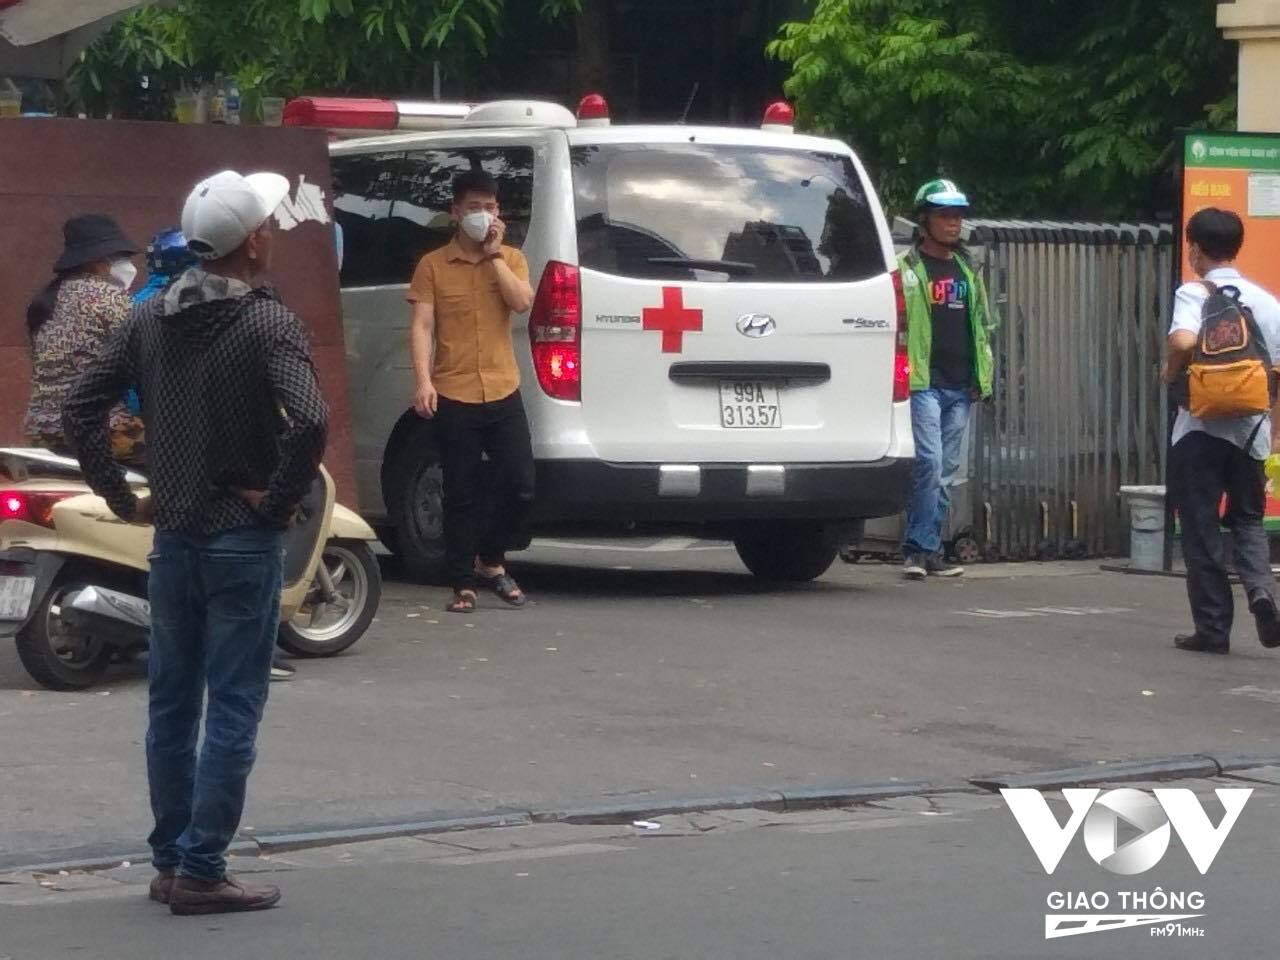 “Cò” gửi xe (áo đen, mũ trắng) chờ sẵn cổng bệnh viện Việt Đức để mời gọi khách đến điểm gửi xe.